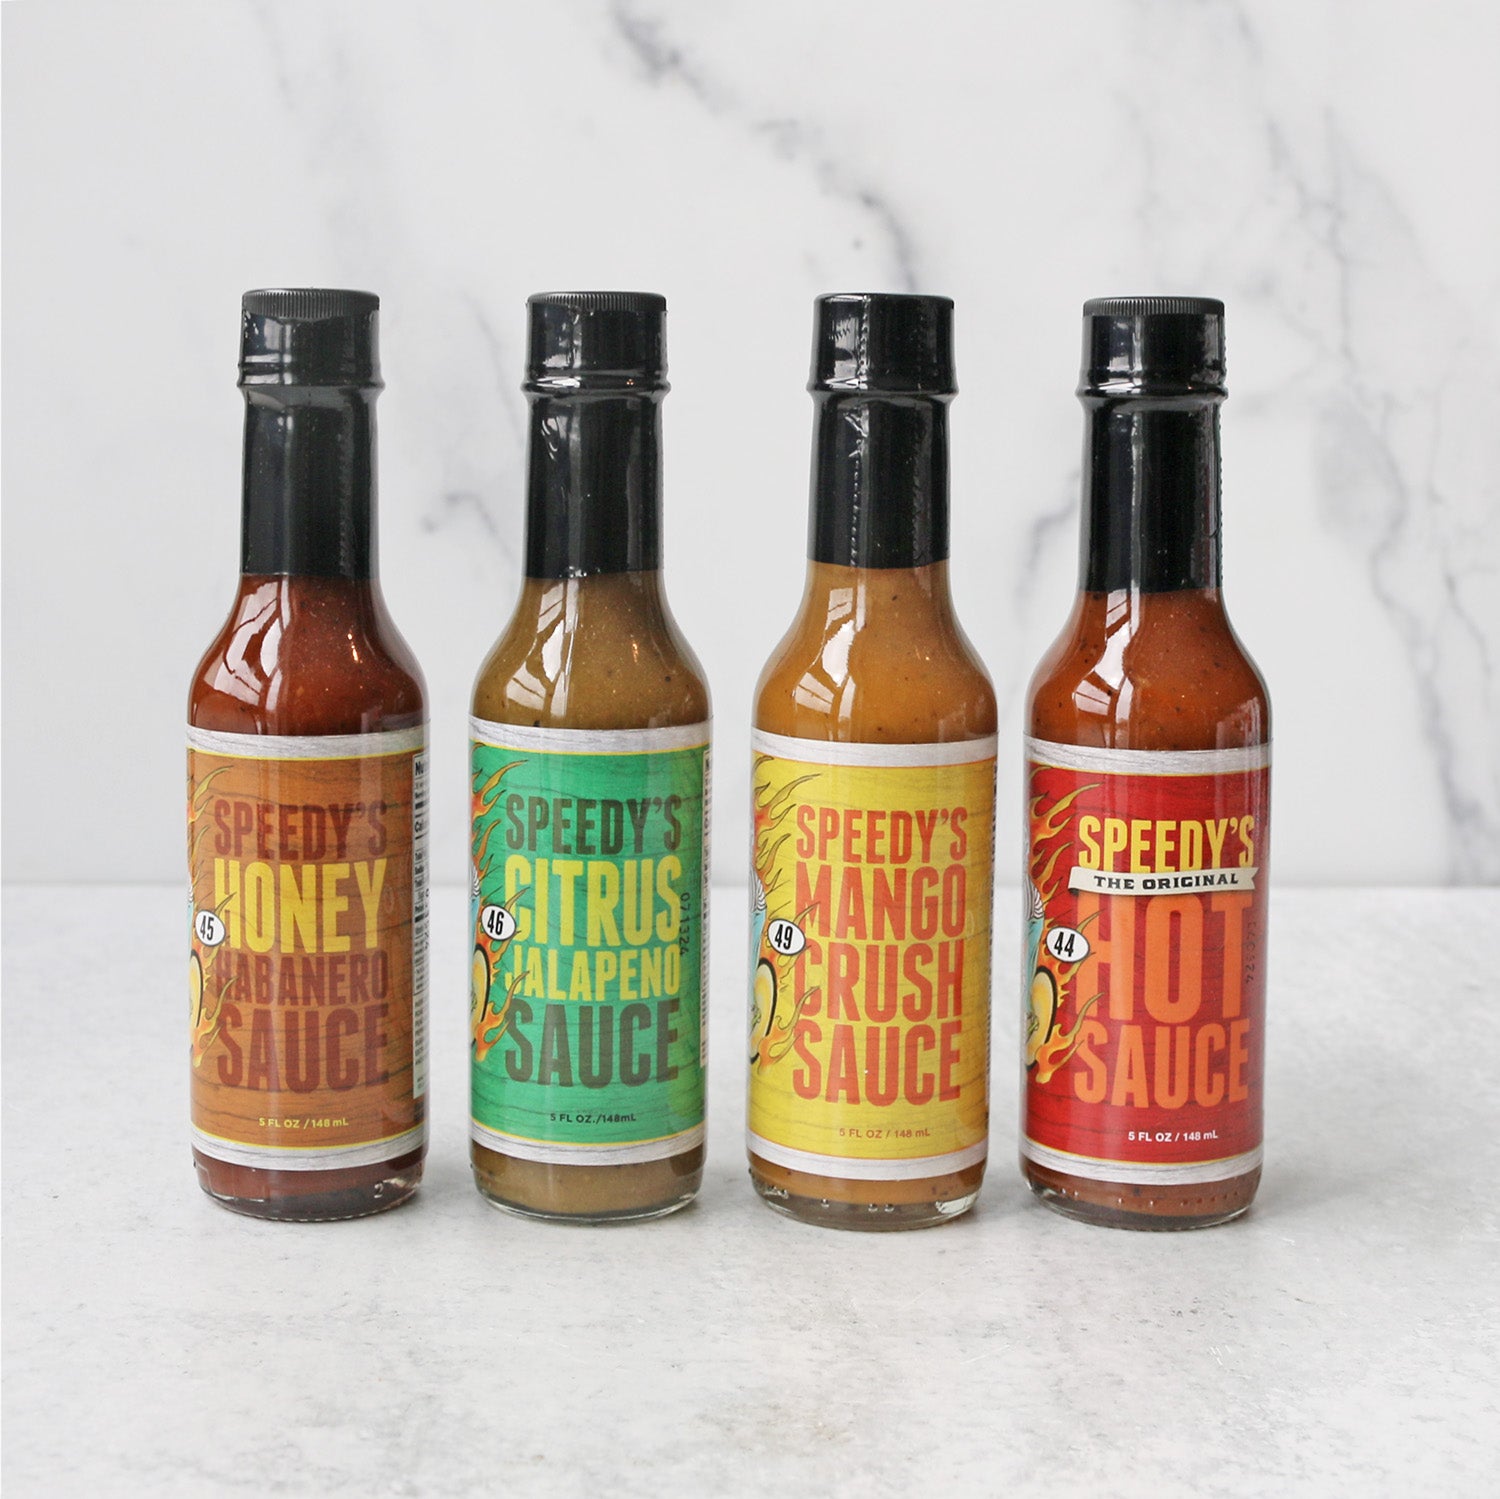 Shop Hot Sauce - Buy Online